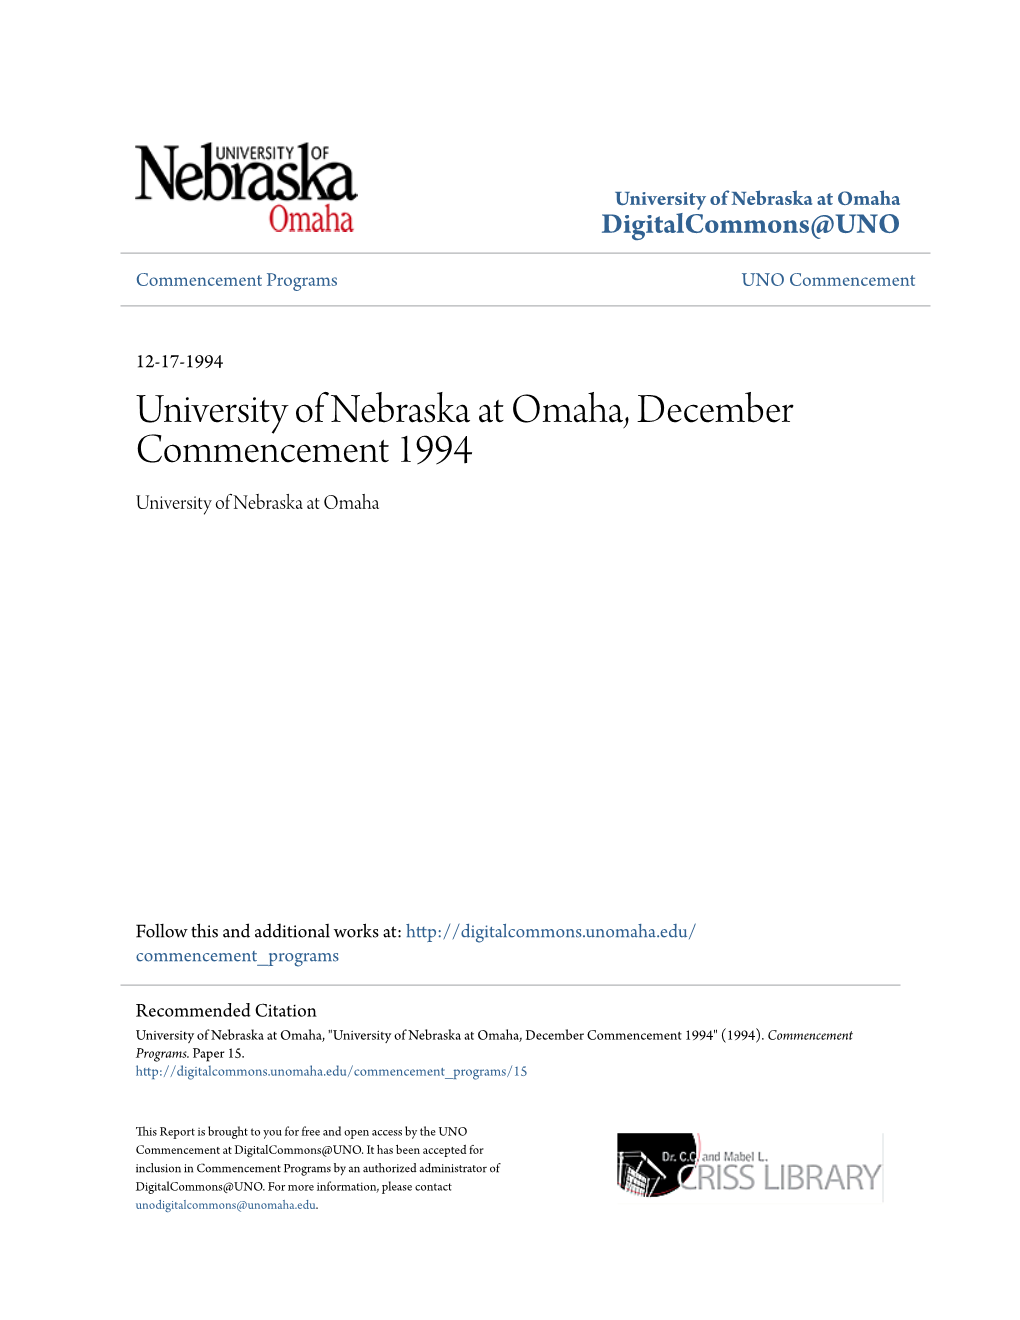 University of Nebraska at Omaha, December Commencement 1994 University of Nebraska at Omaha